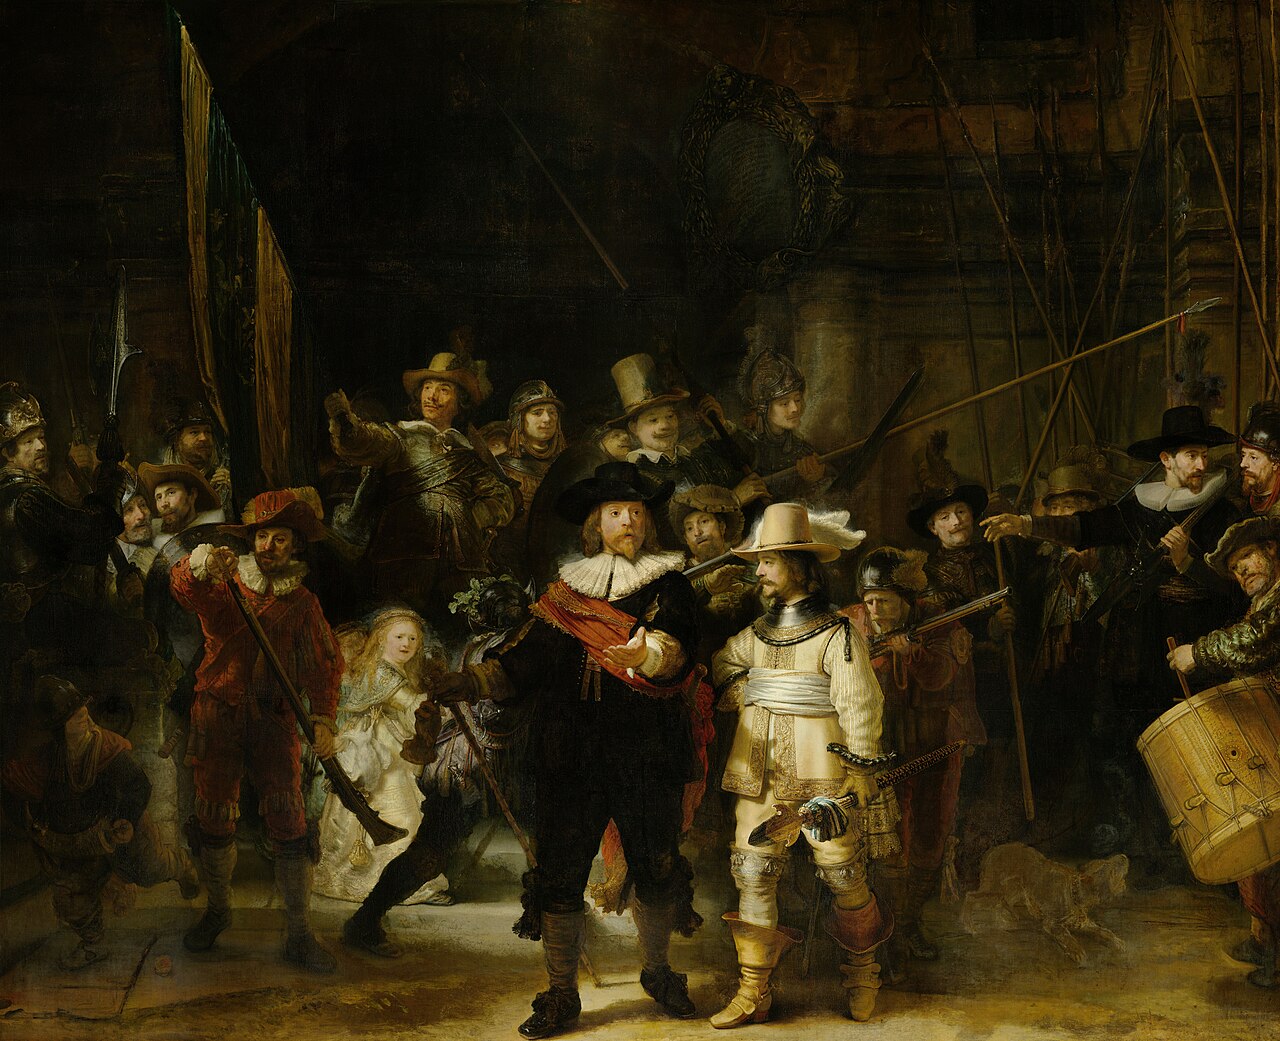 The Nightwatch by Rembrandt - Rijksmuseum.jpg